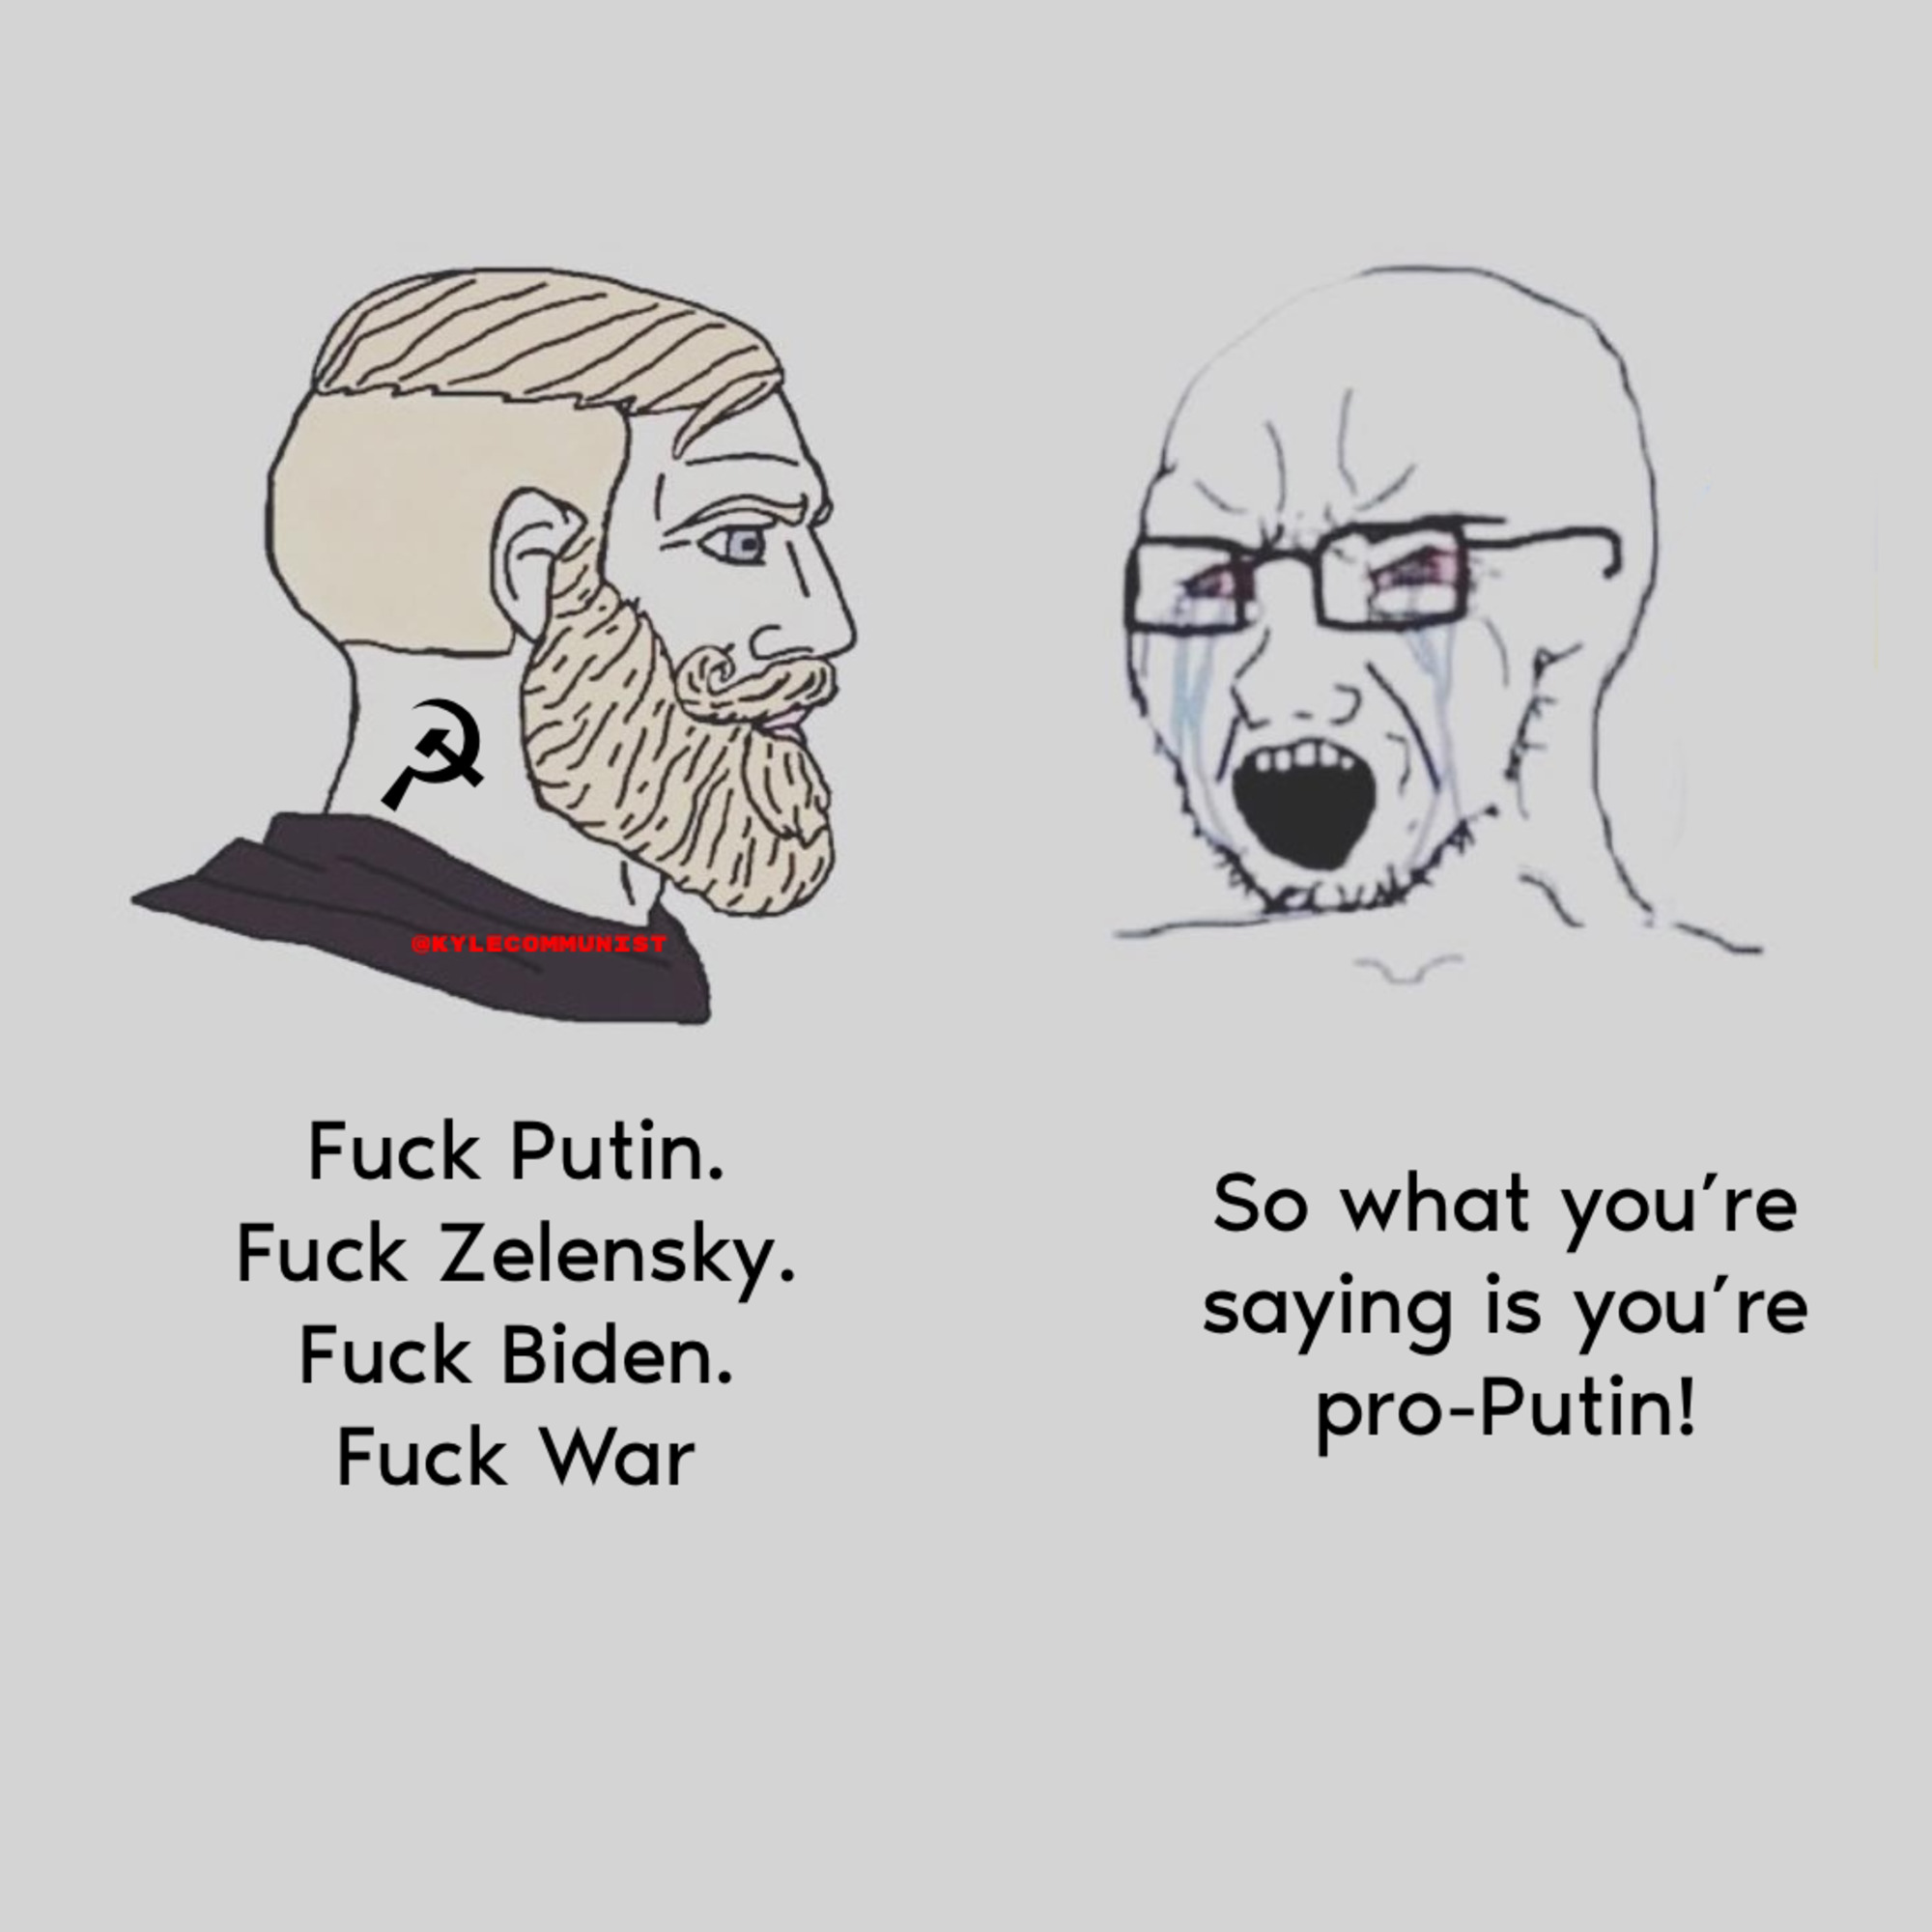 Pro-Putin? 